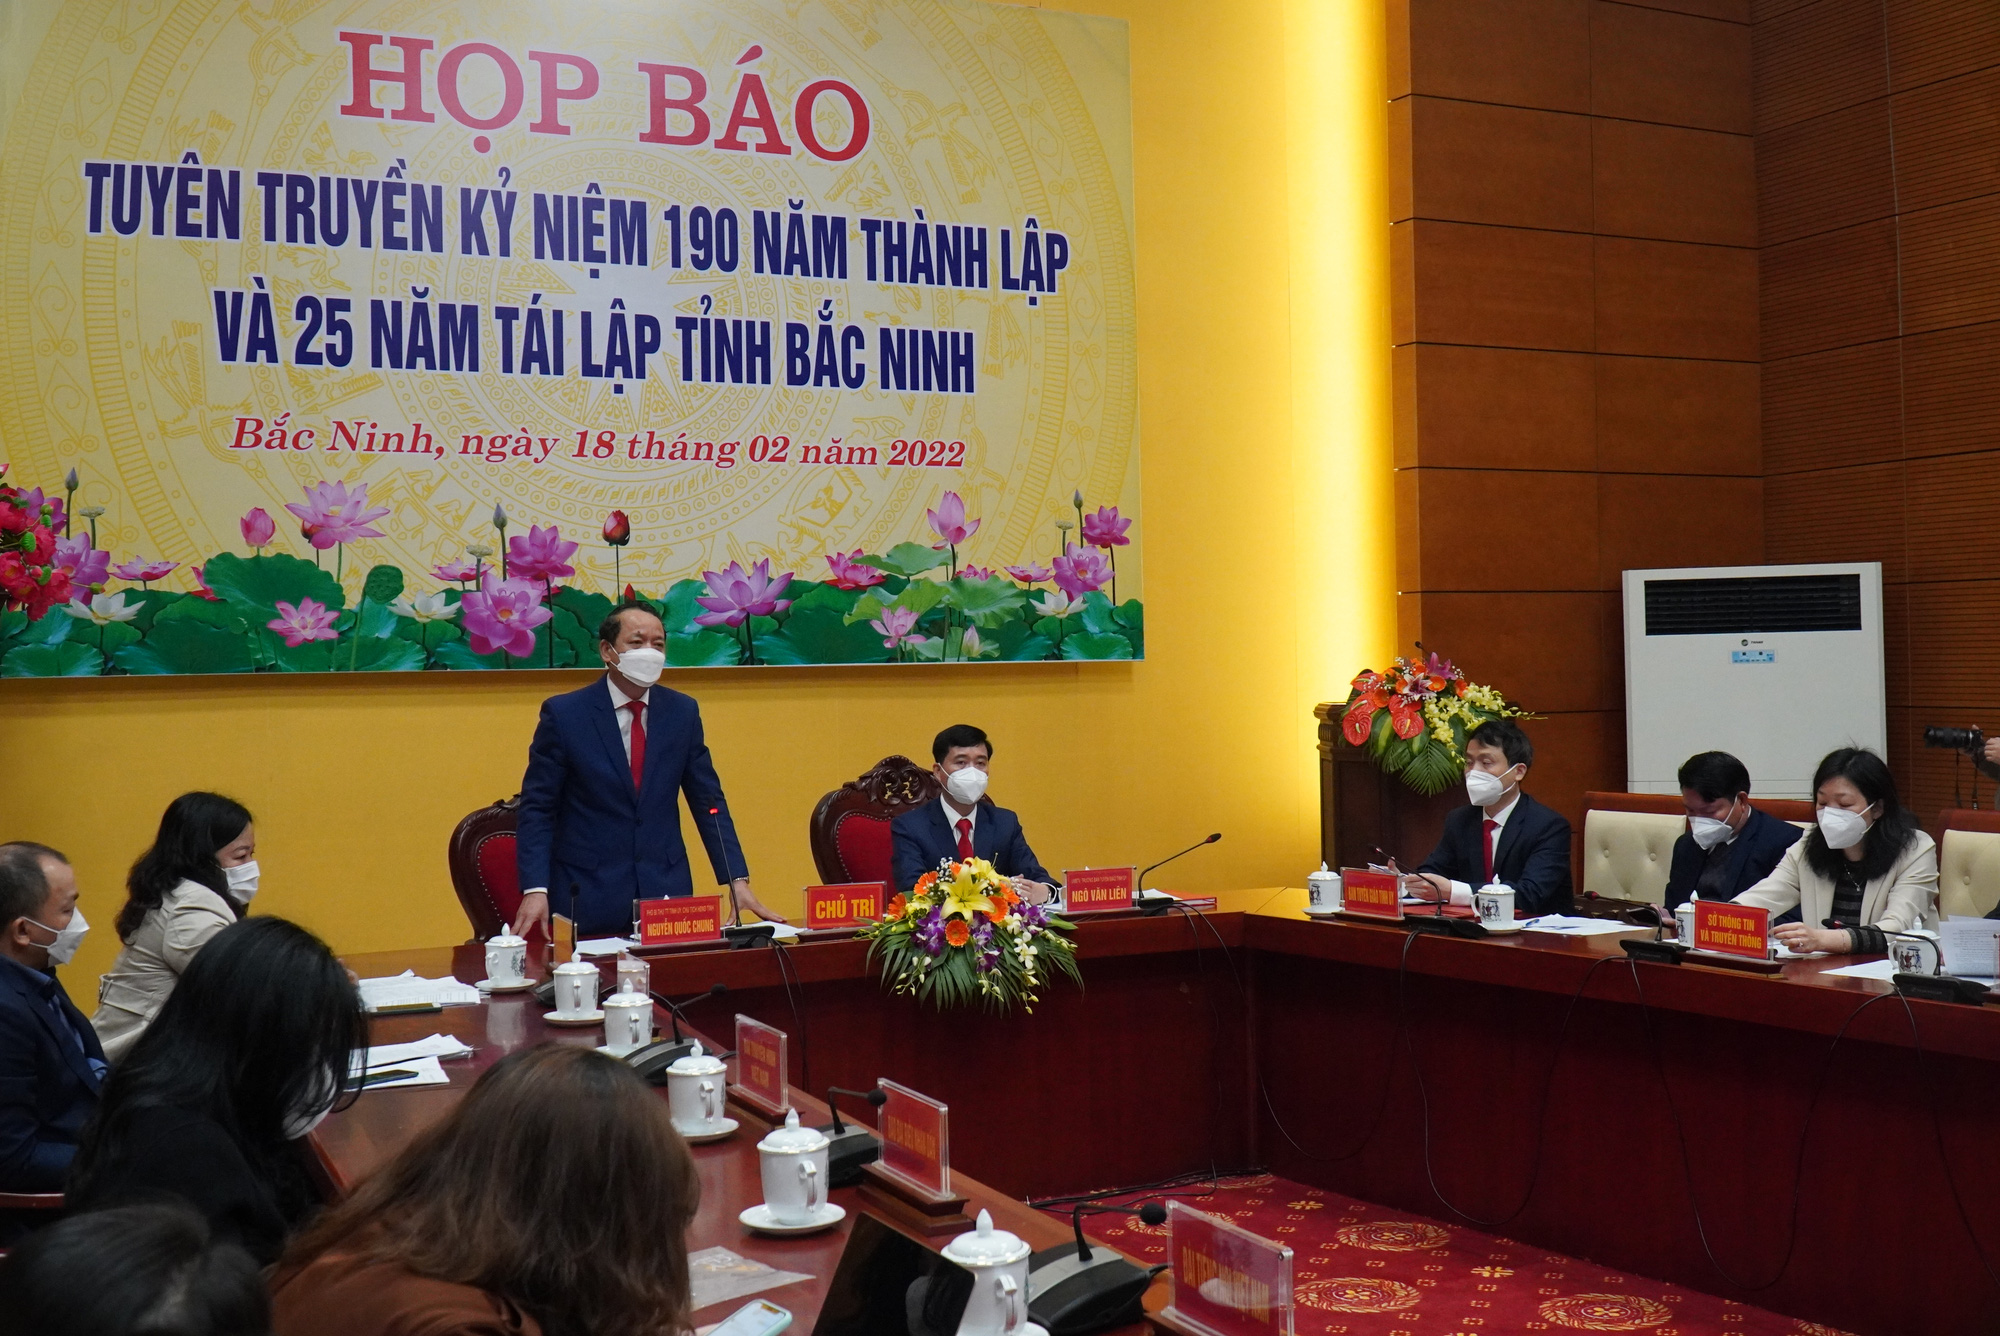 Hơn 300 đại biểu sẽ dự lễ kỷ niệm 190 năm thành lập và 25 năm tái lập tỉnh Bắc Ninh - Ảnh 1.